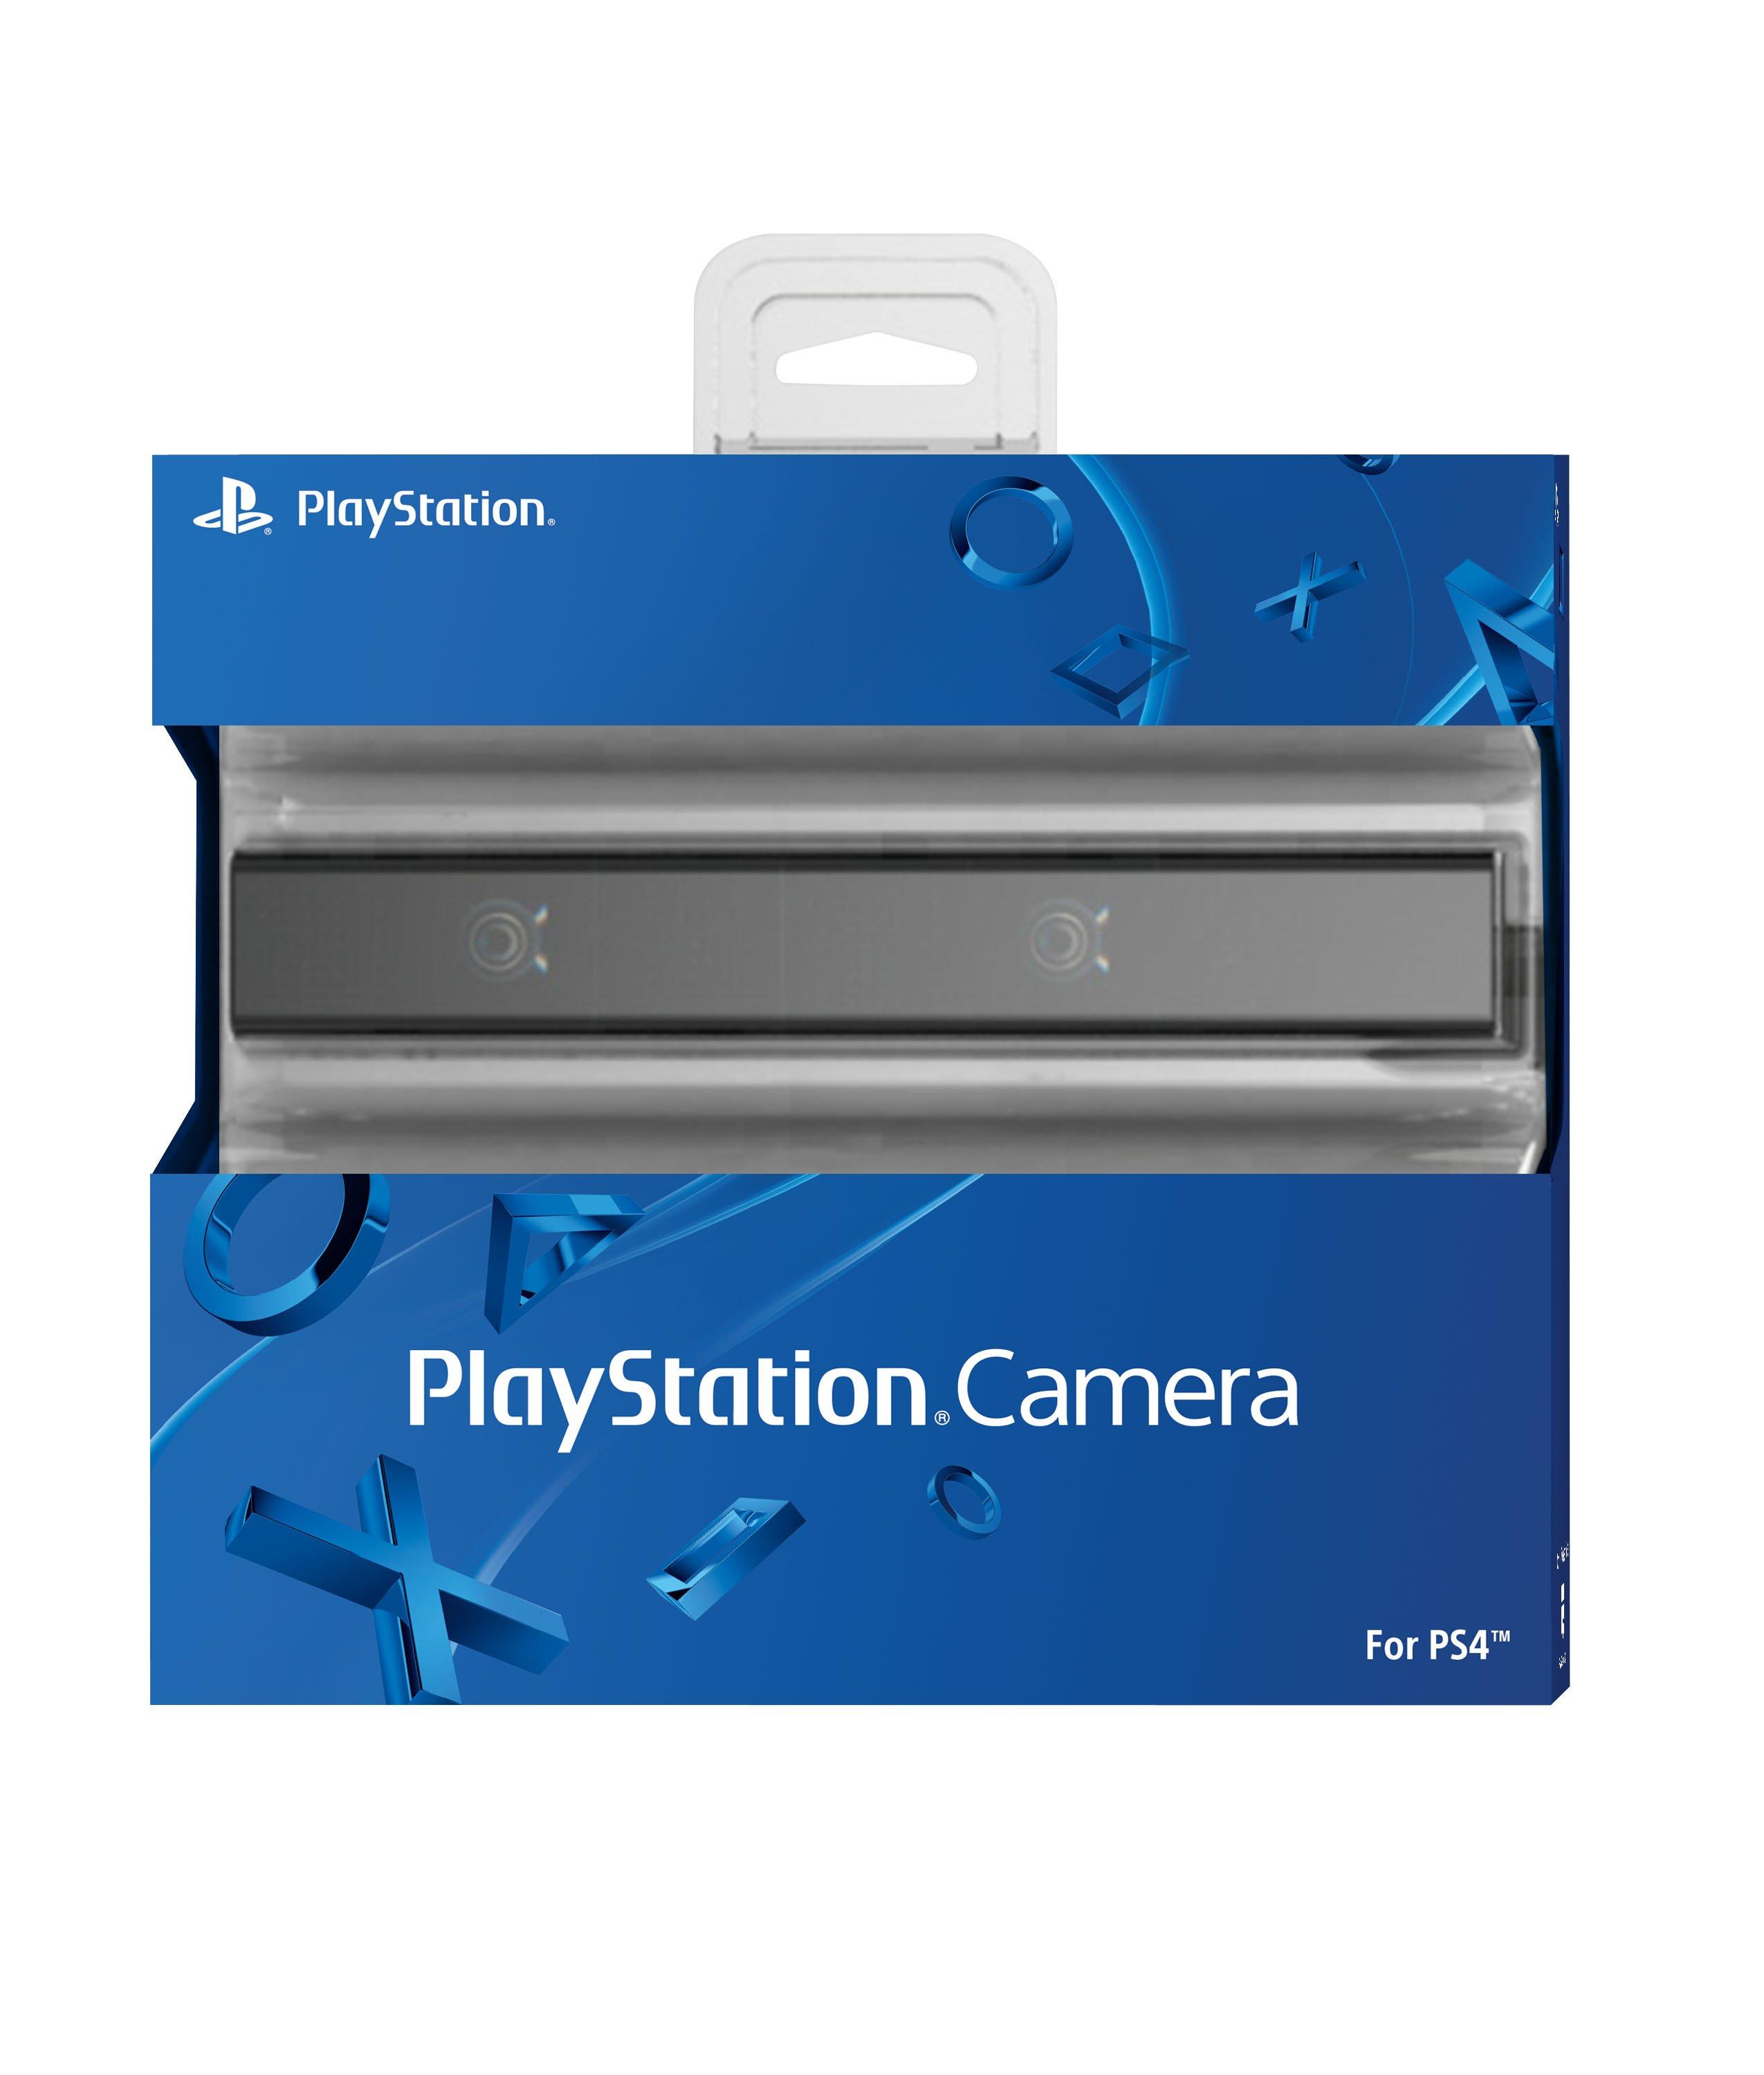 Trade In Sony PlayStation Camera for PlayStation 4 Model) | GameStop